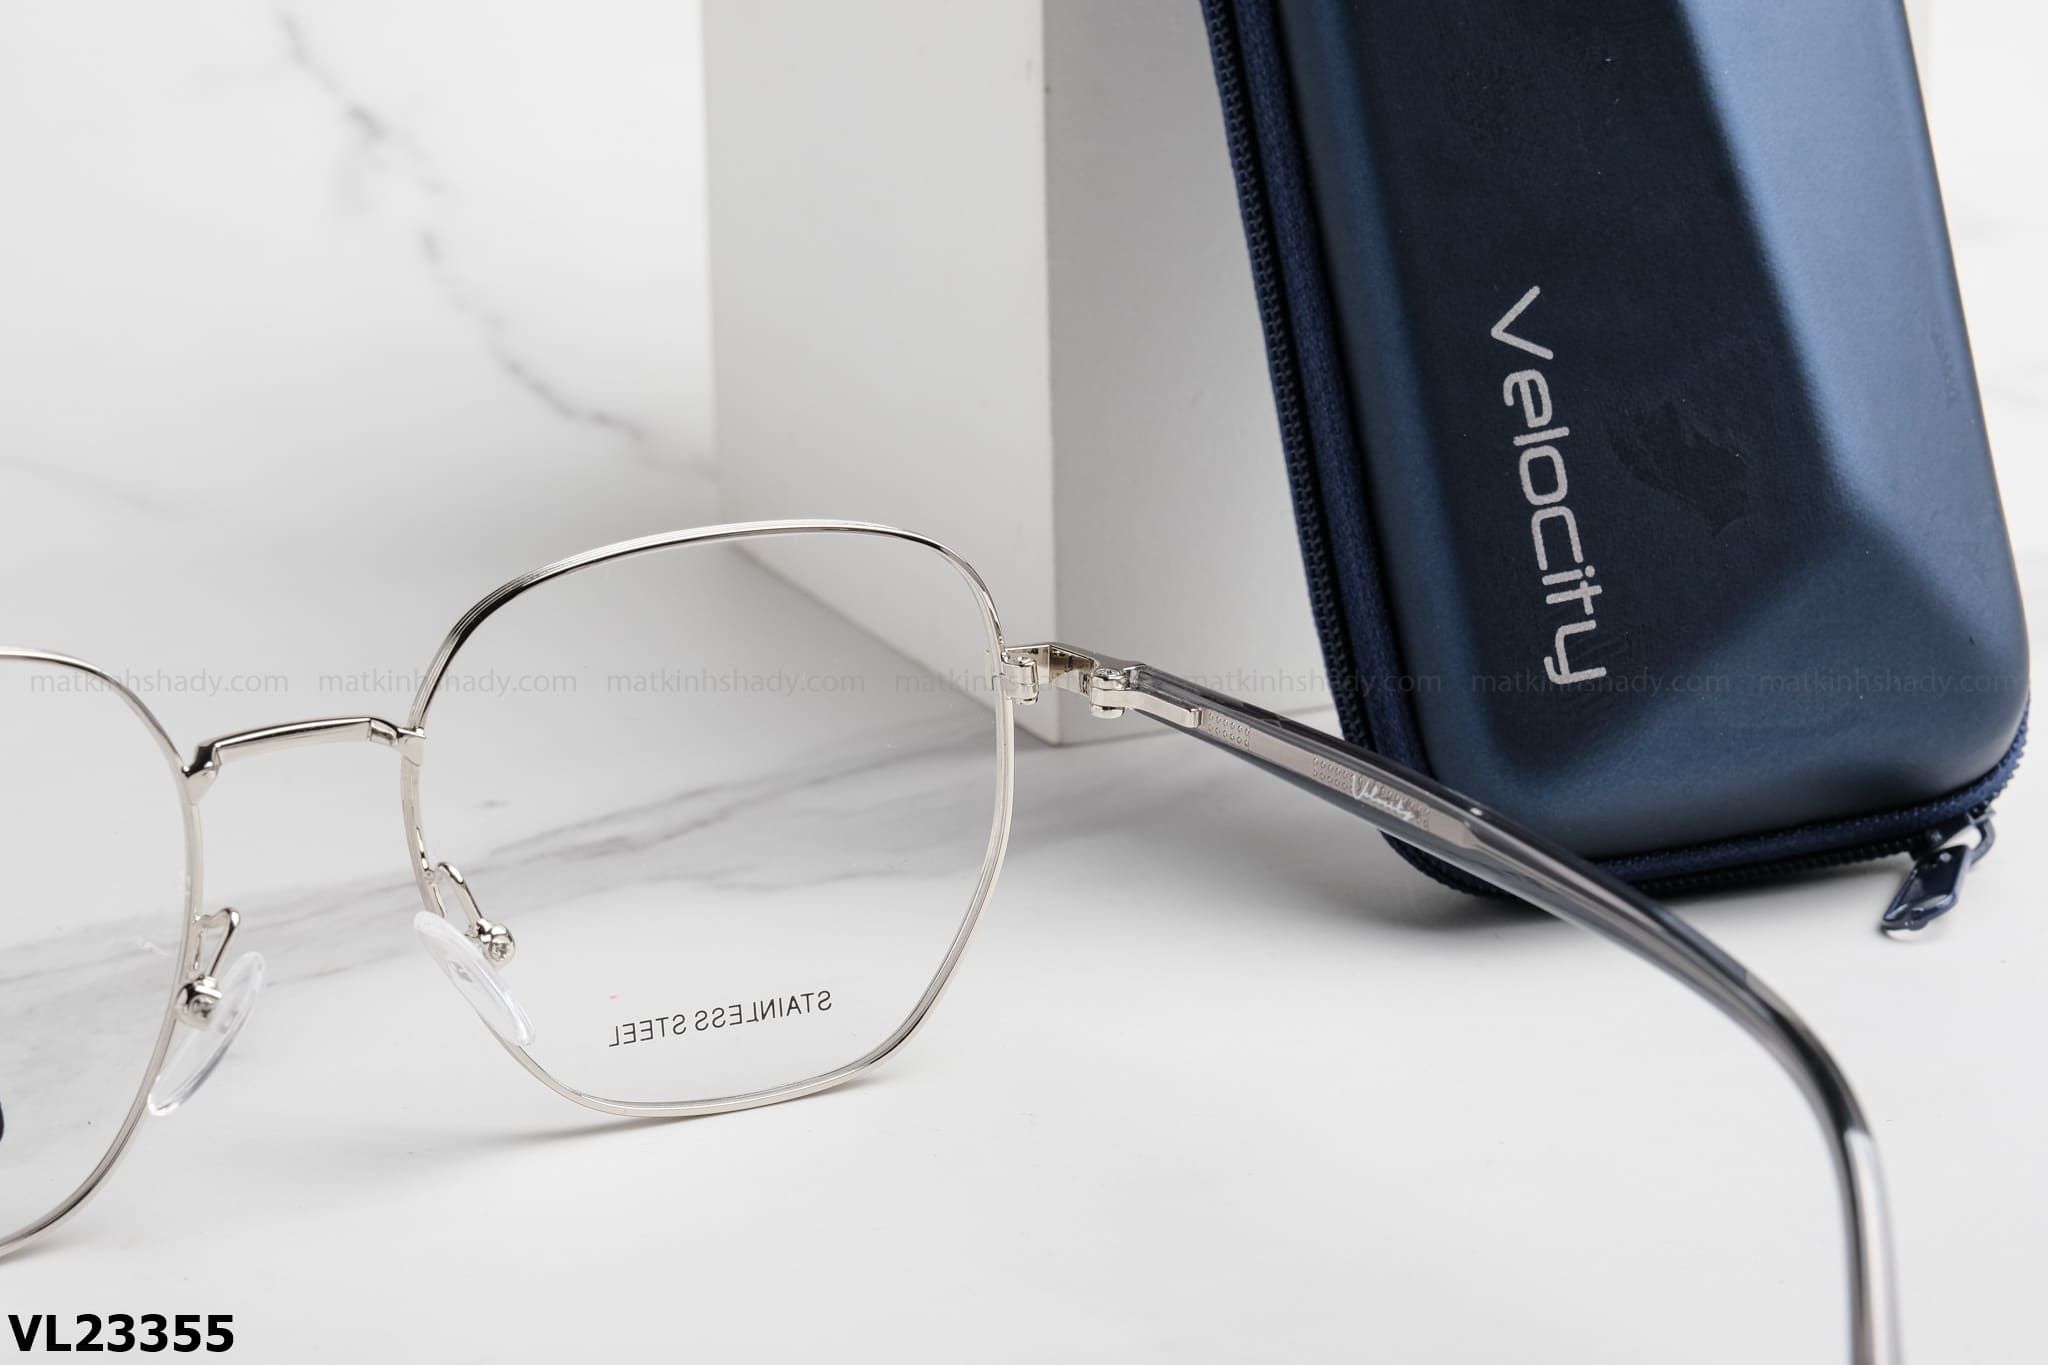  Velocity Eyewear - Glasses - VL23355 